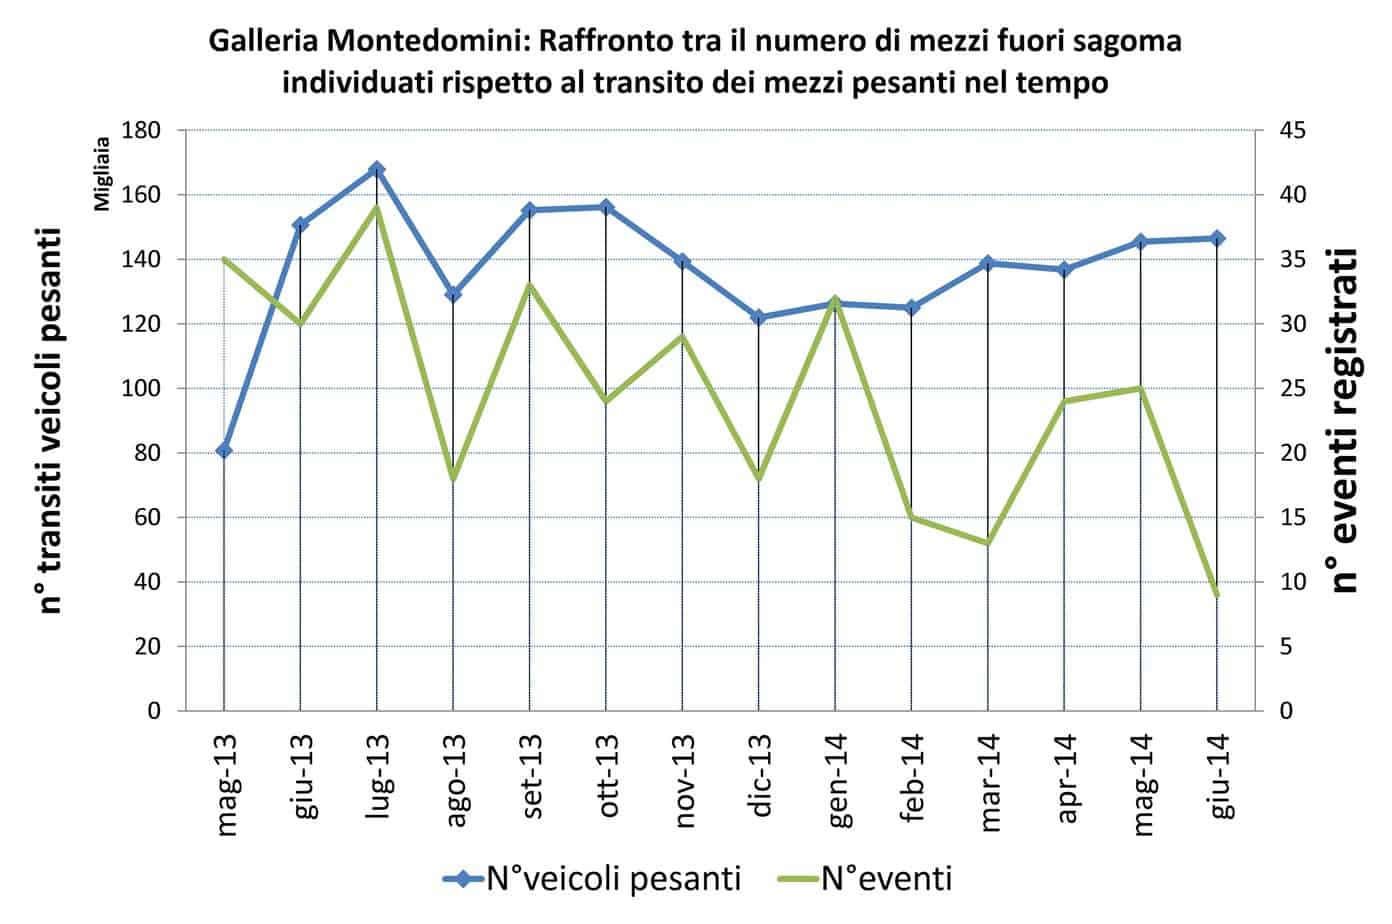 Il raffronto tra il numero di mezzi fuori sagoma individuati e il transito dei mezzi pesanti nel tempo nella galleria Montedomini